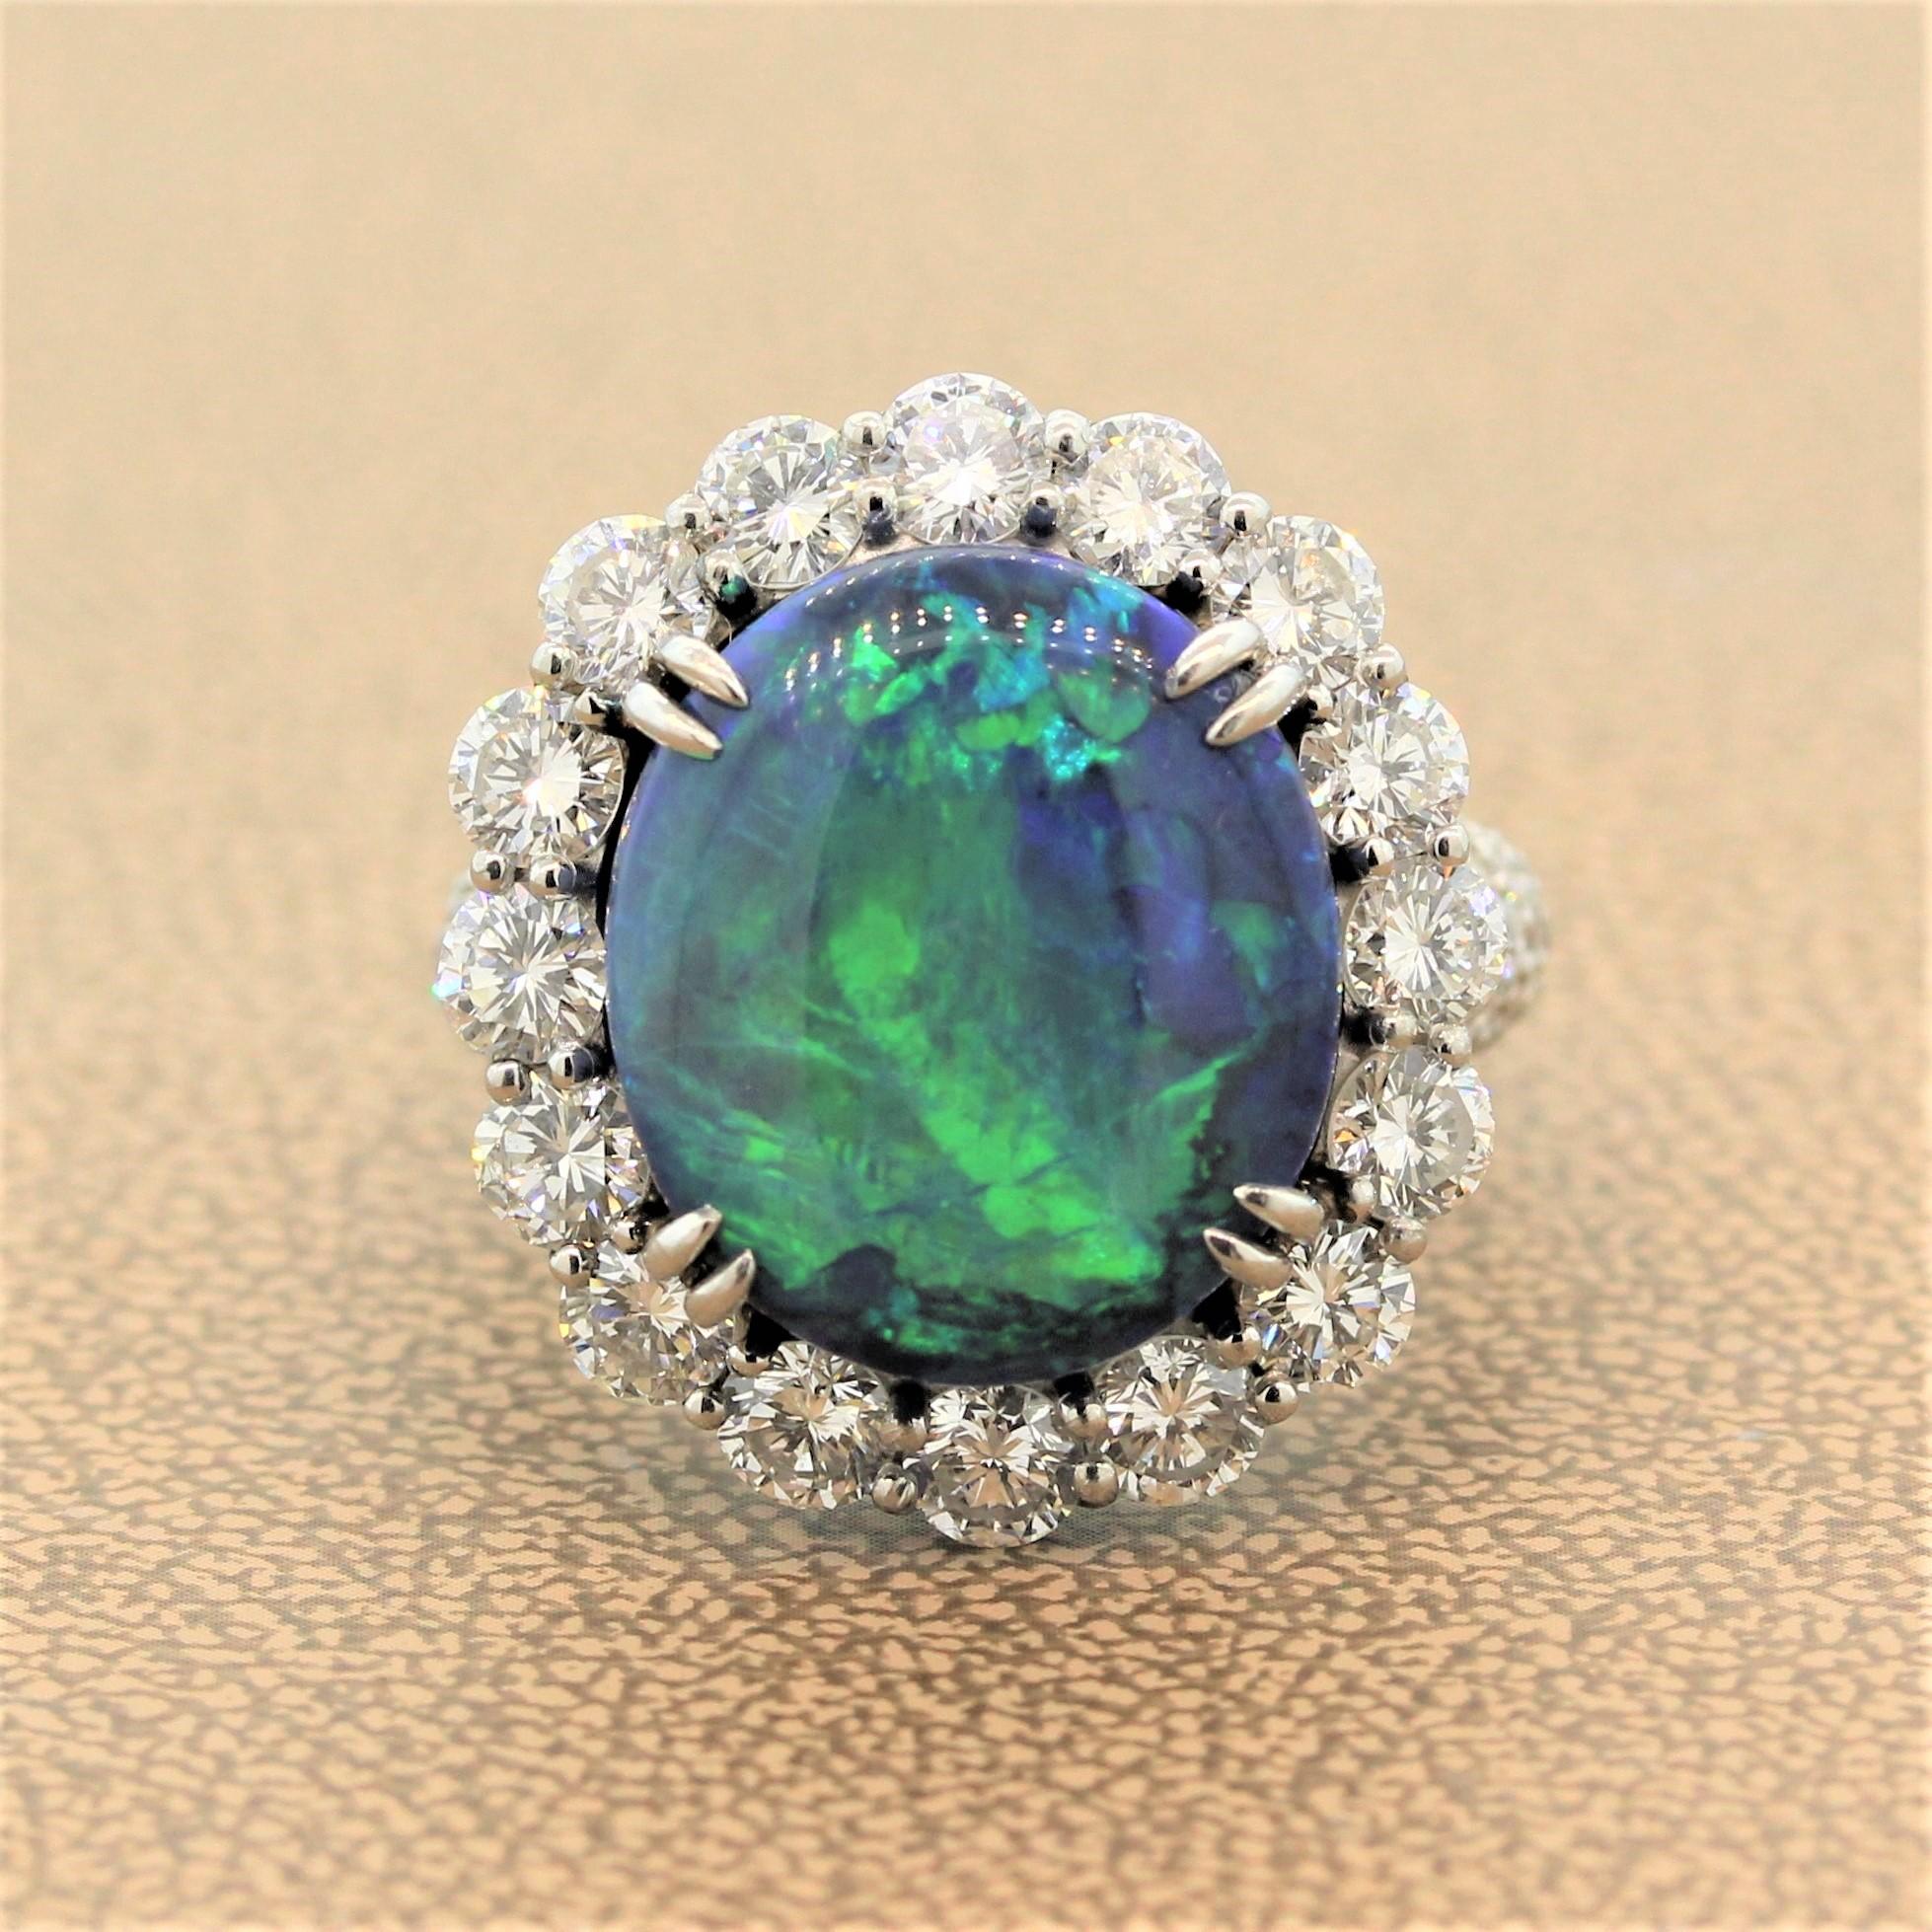 Ein bemerkenswerter Ring mit einem 10,47 Karat schweren australischen Opal mit wunderschönem Farbenspiel. Schimmernde Blau- und Grüntöne blitzen auf, wenn das Licht über den Edelstein streicht. Um mit dem üppigen Opal Schritt zu halten, sind 4,08